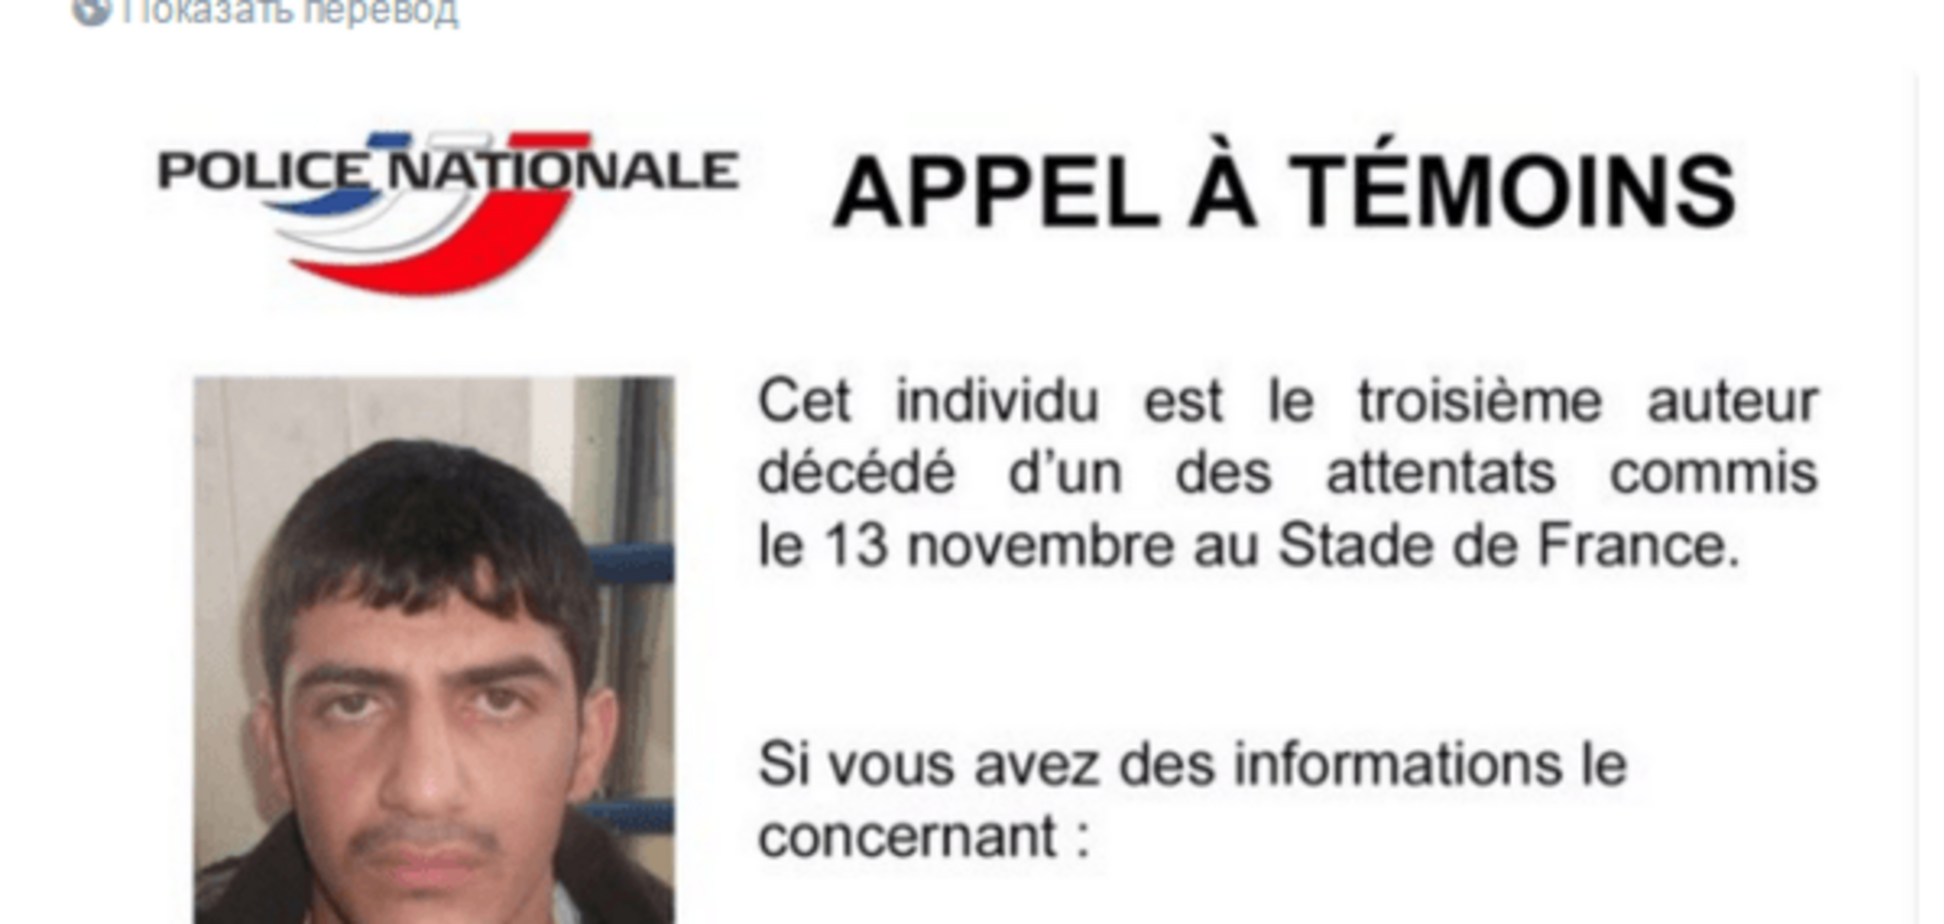 Полиция показала третьего парижского террориста: фотофакт